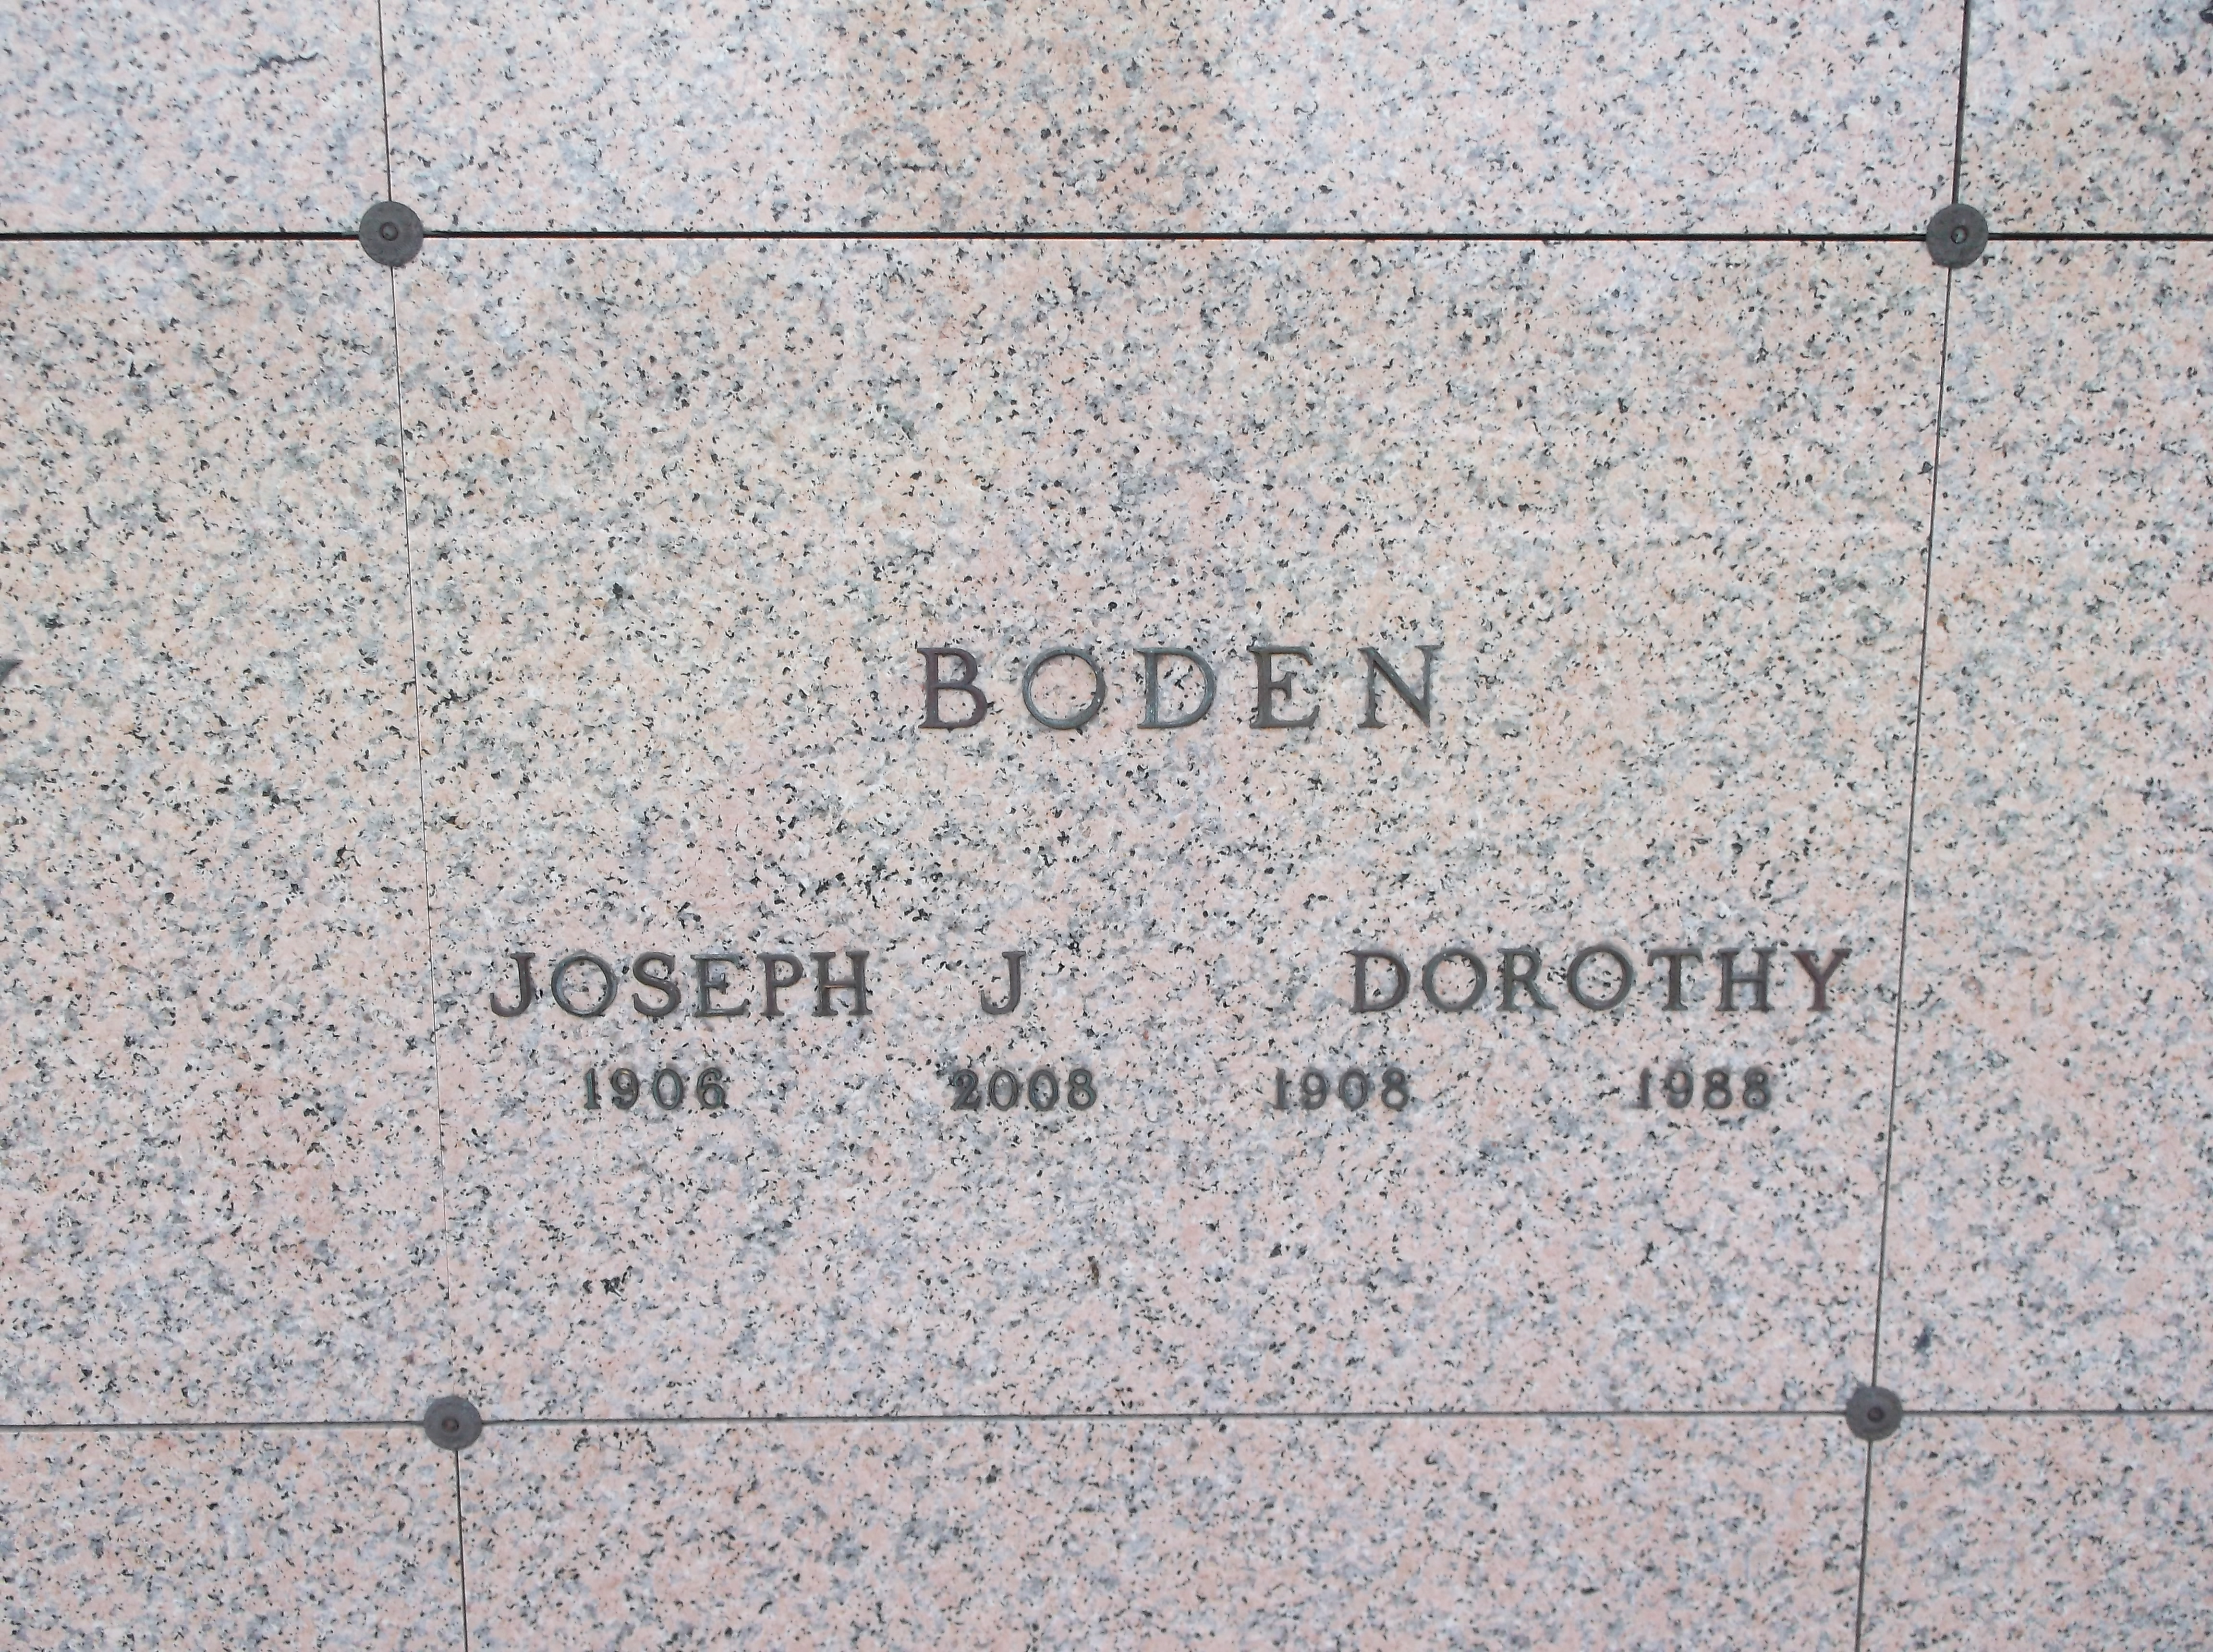 Dorothy Boden